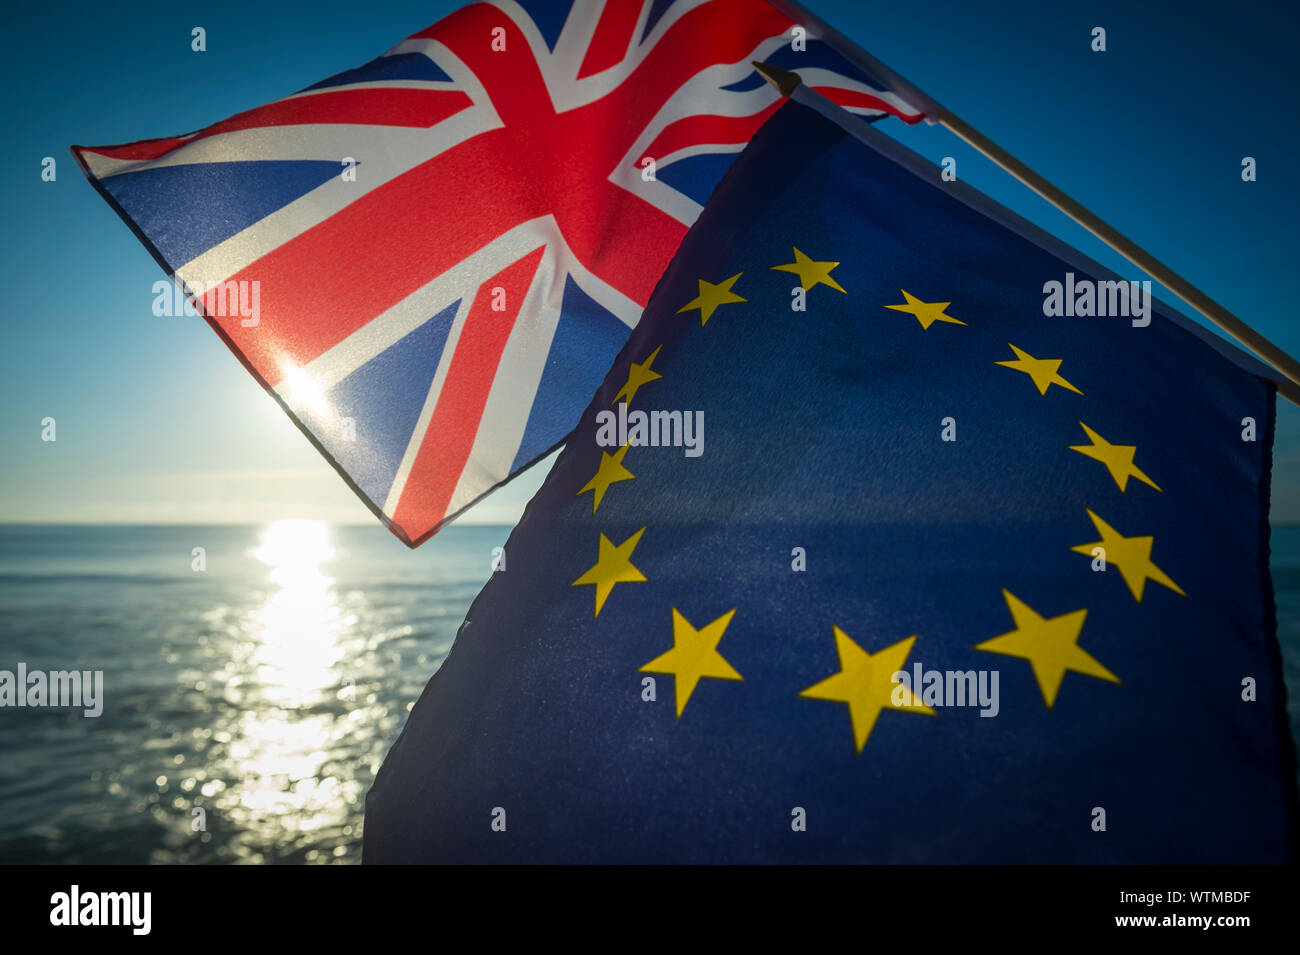 Europäischen Union und der britische Union Jack Fahnen fliegen zusammen wie die Sonne geht in eine neue Ära auf das Verhältnis zwischen der EU und Großbritannien nach Brexit Stockfoto